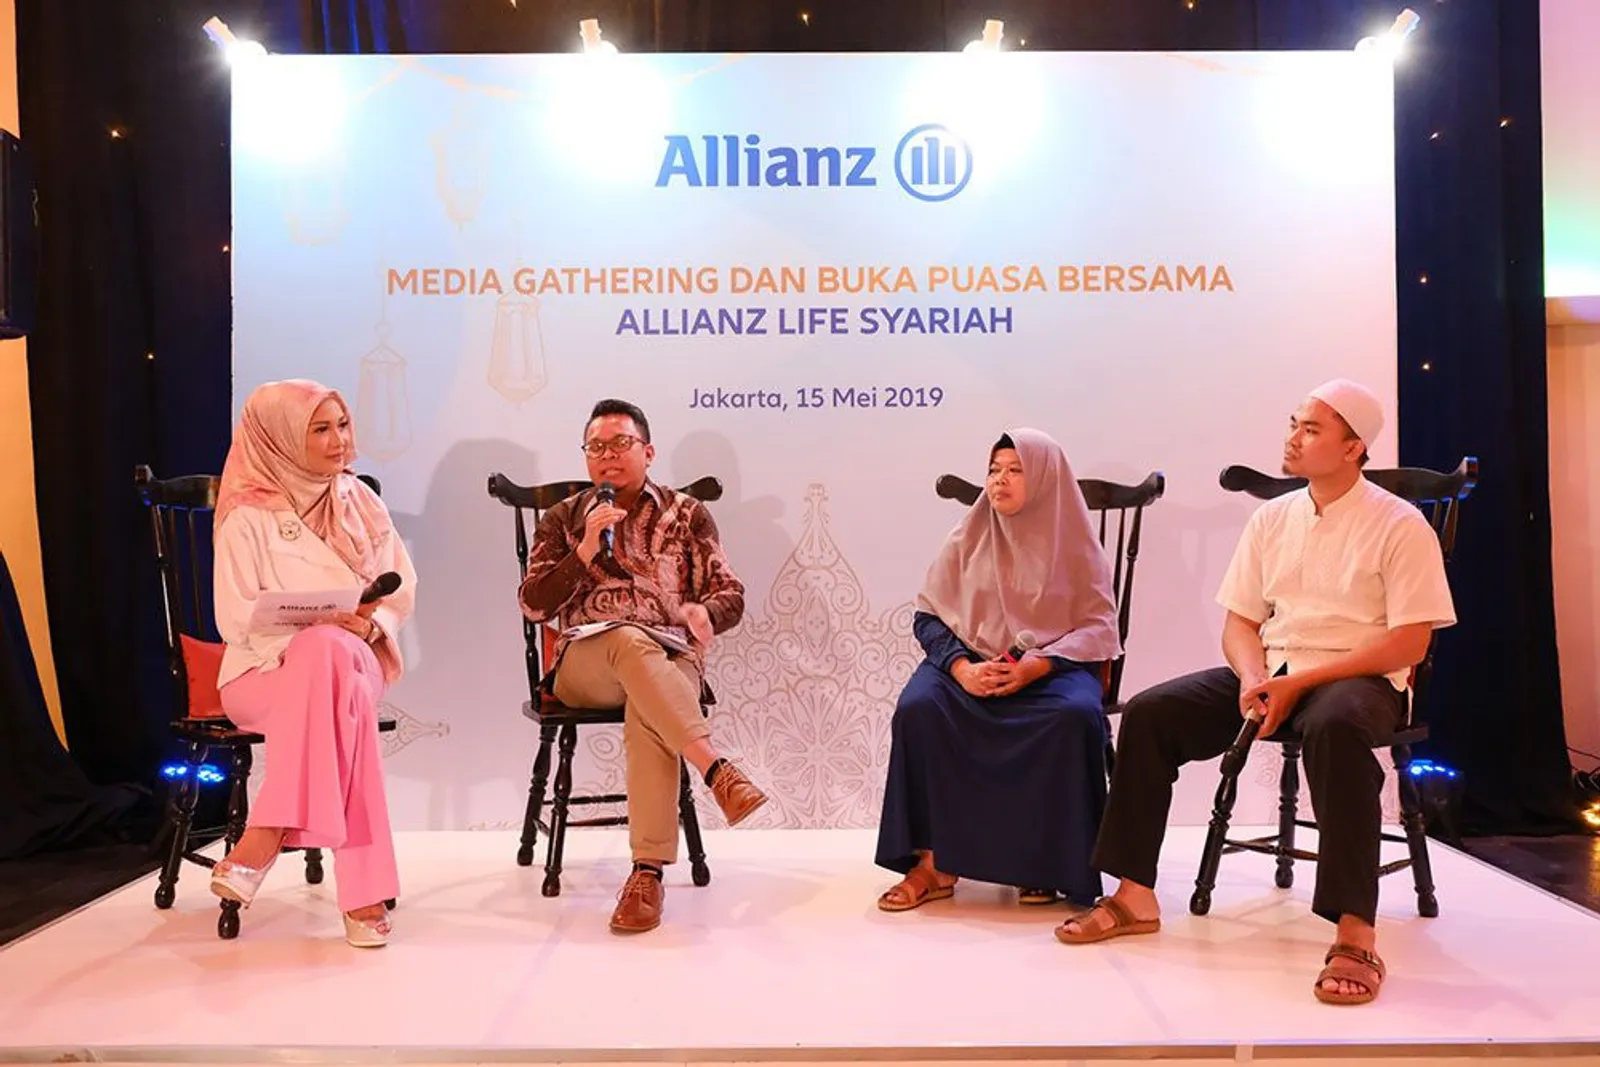 Allianz Life Syariah Kembali Adakan Program Kado Umroh, Ini Caranya 